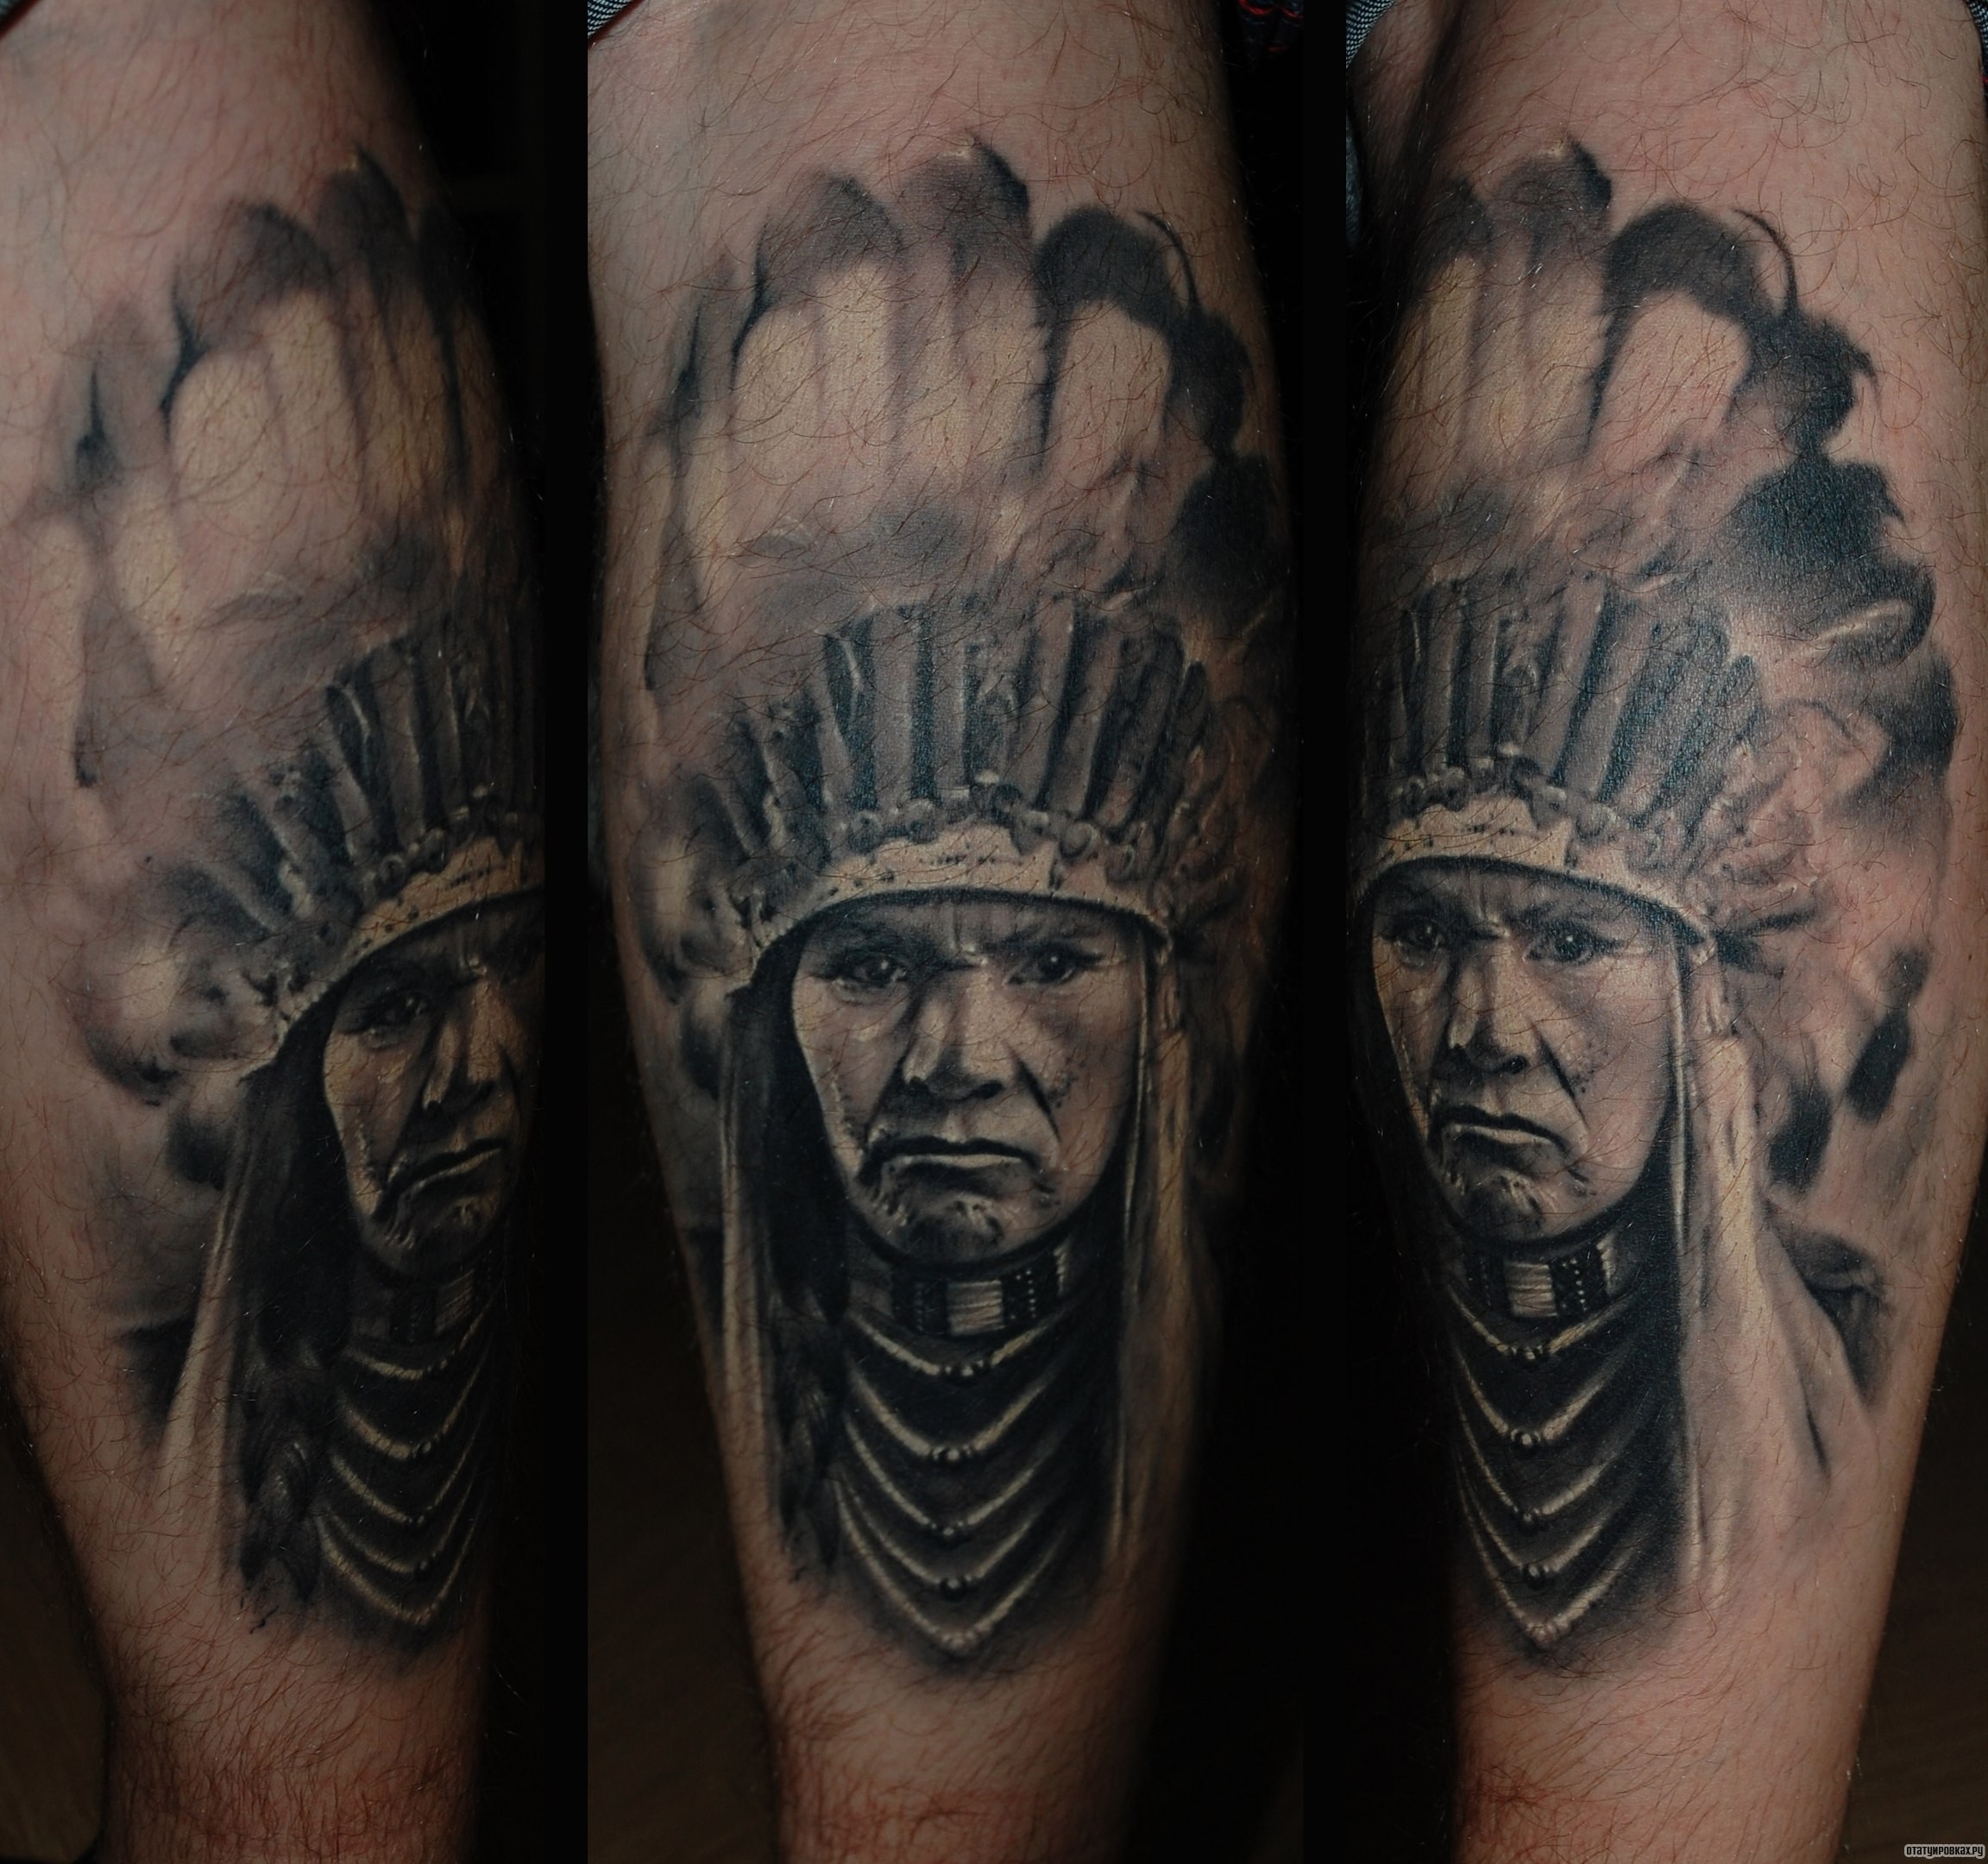 Фотография татуировки под названием «Индеец»